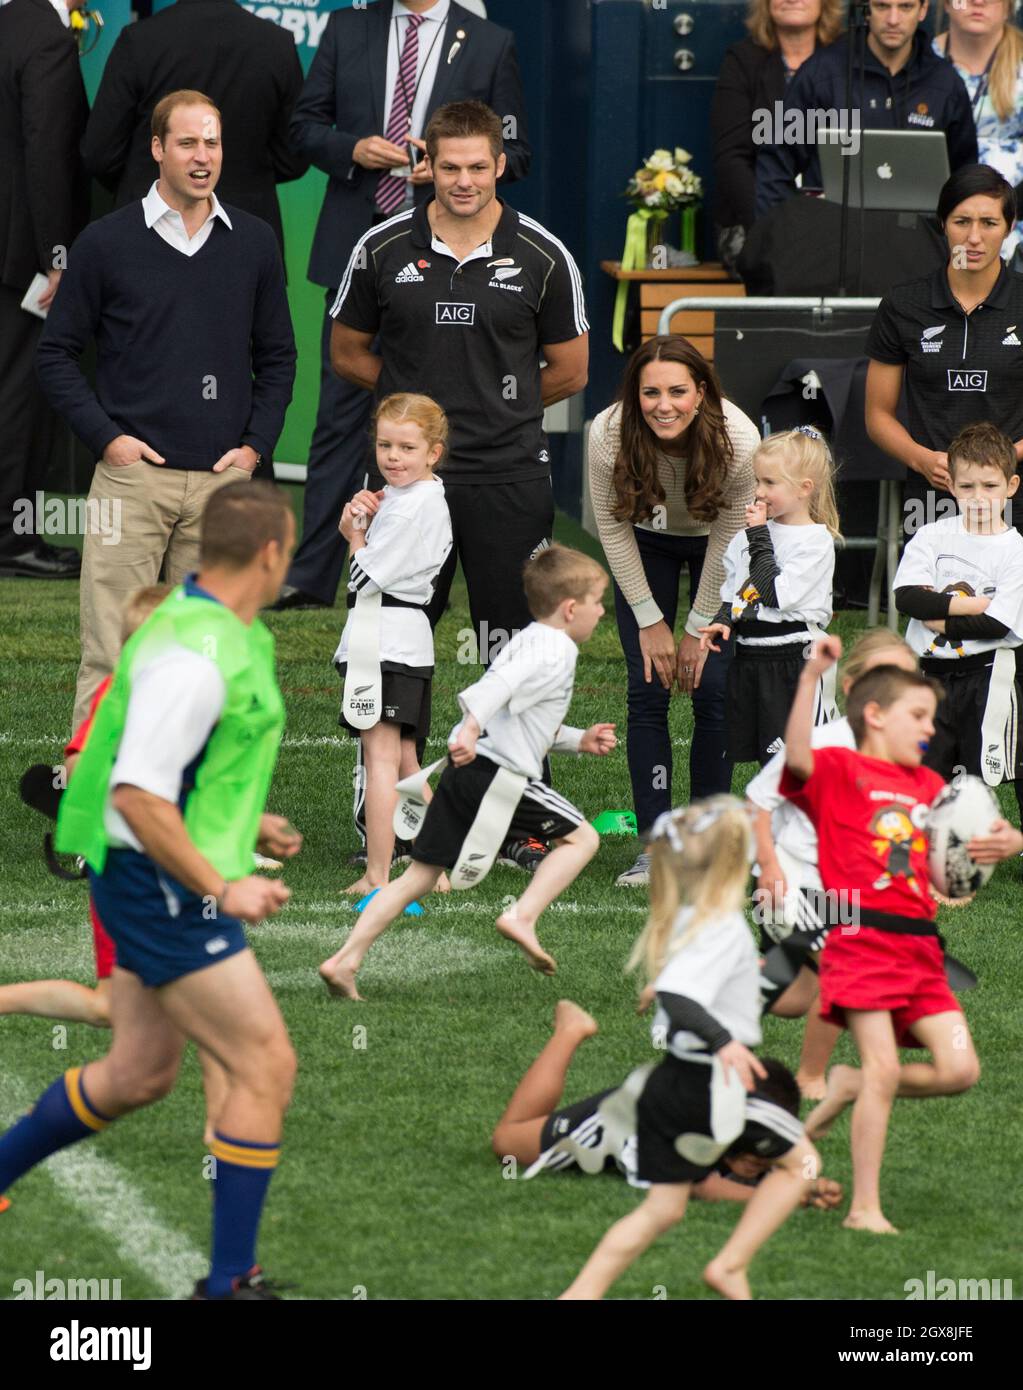 Le prince William, duc de Cambridge, Catherine, duchesse de Cambridge et le capitaine de tous les Noirs Richie McCaw assistent à un tournoi de rugby de jeunes joueurs au stade Forsyth Barr à Dunedin, en Nouvelle-Zélande, le 13 avril 2014. Banque D'Images